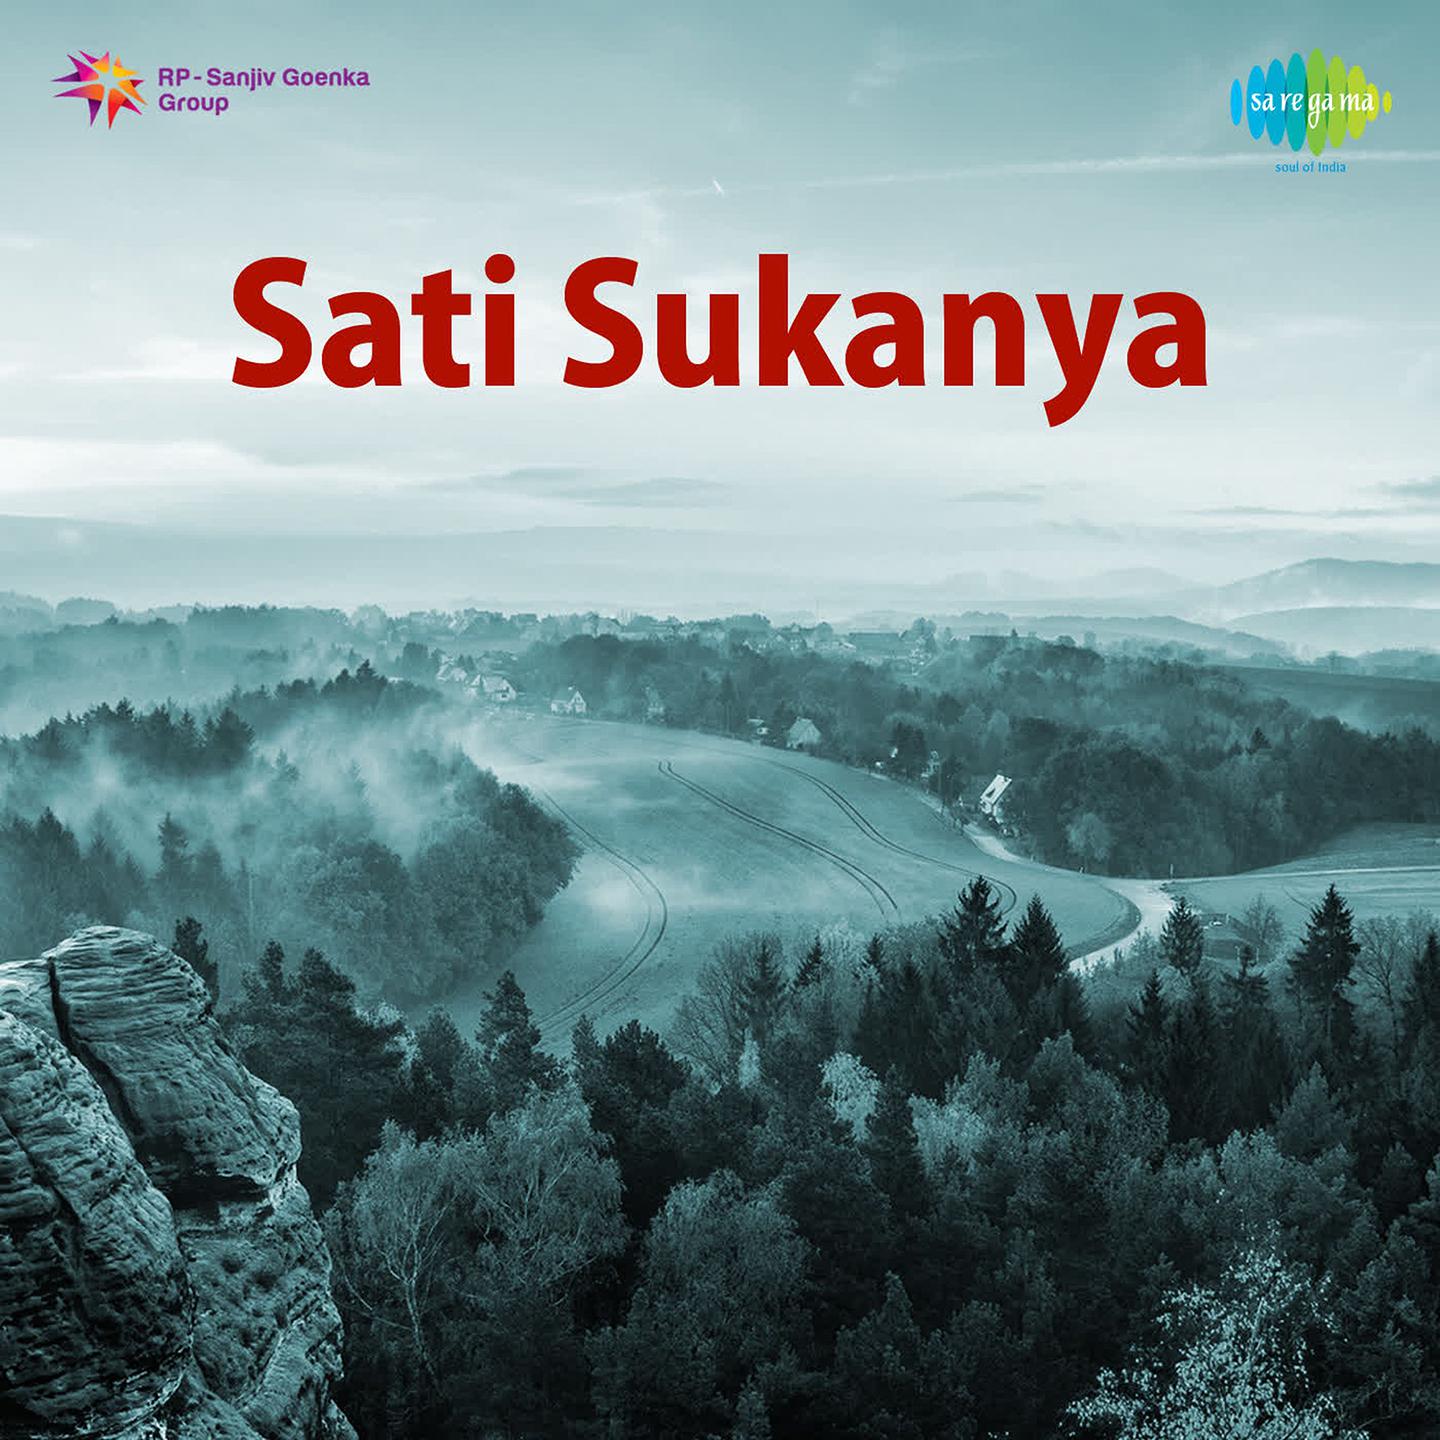 Sati Sukanya